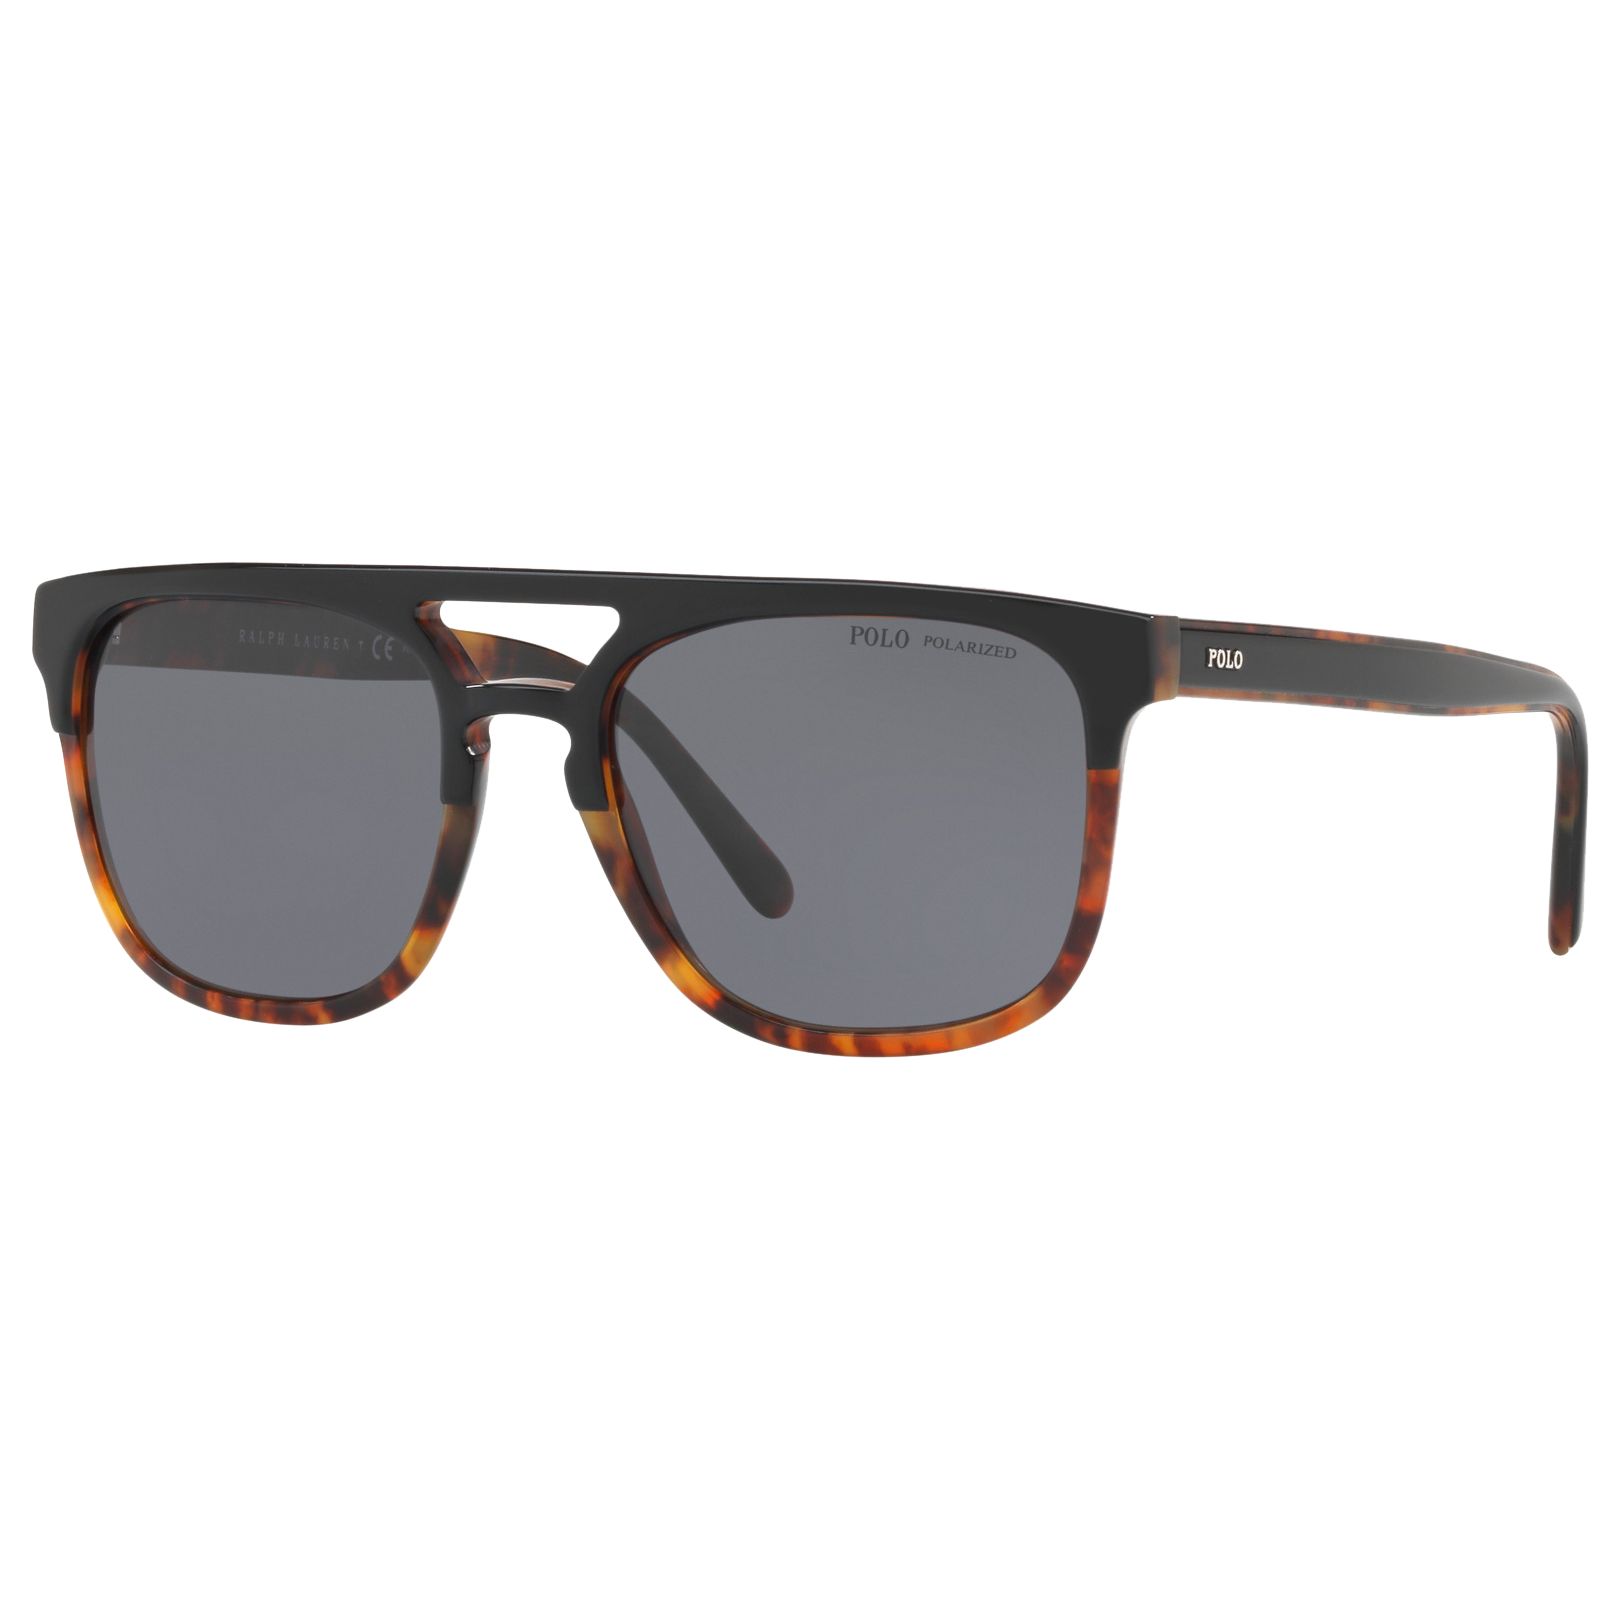 Polo Ralph Lauren PH4125 Men's Polarised D-Frame Sunglasses, Tortoise/Grey